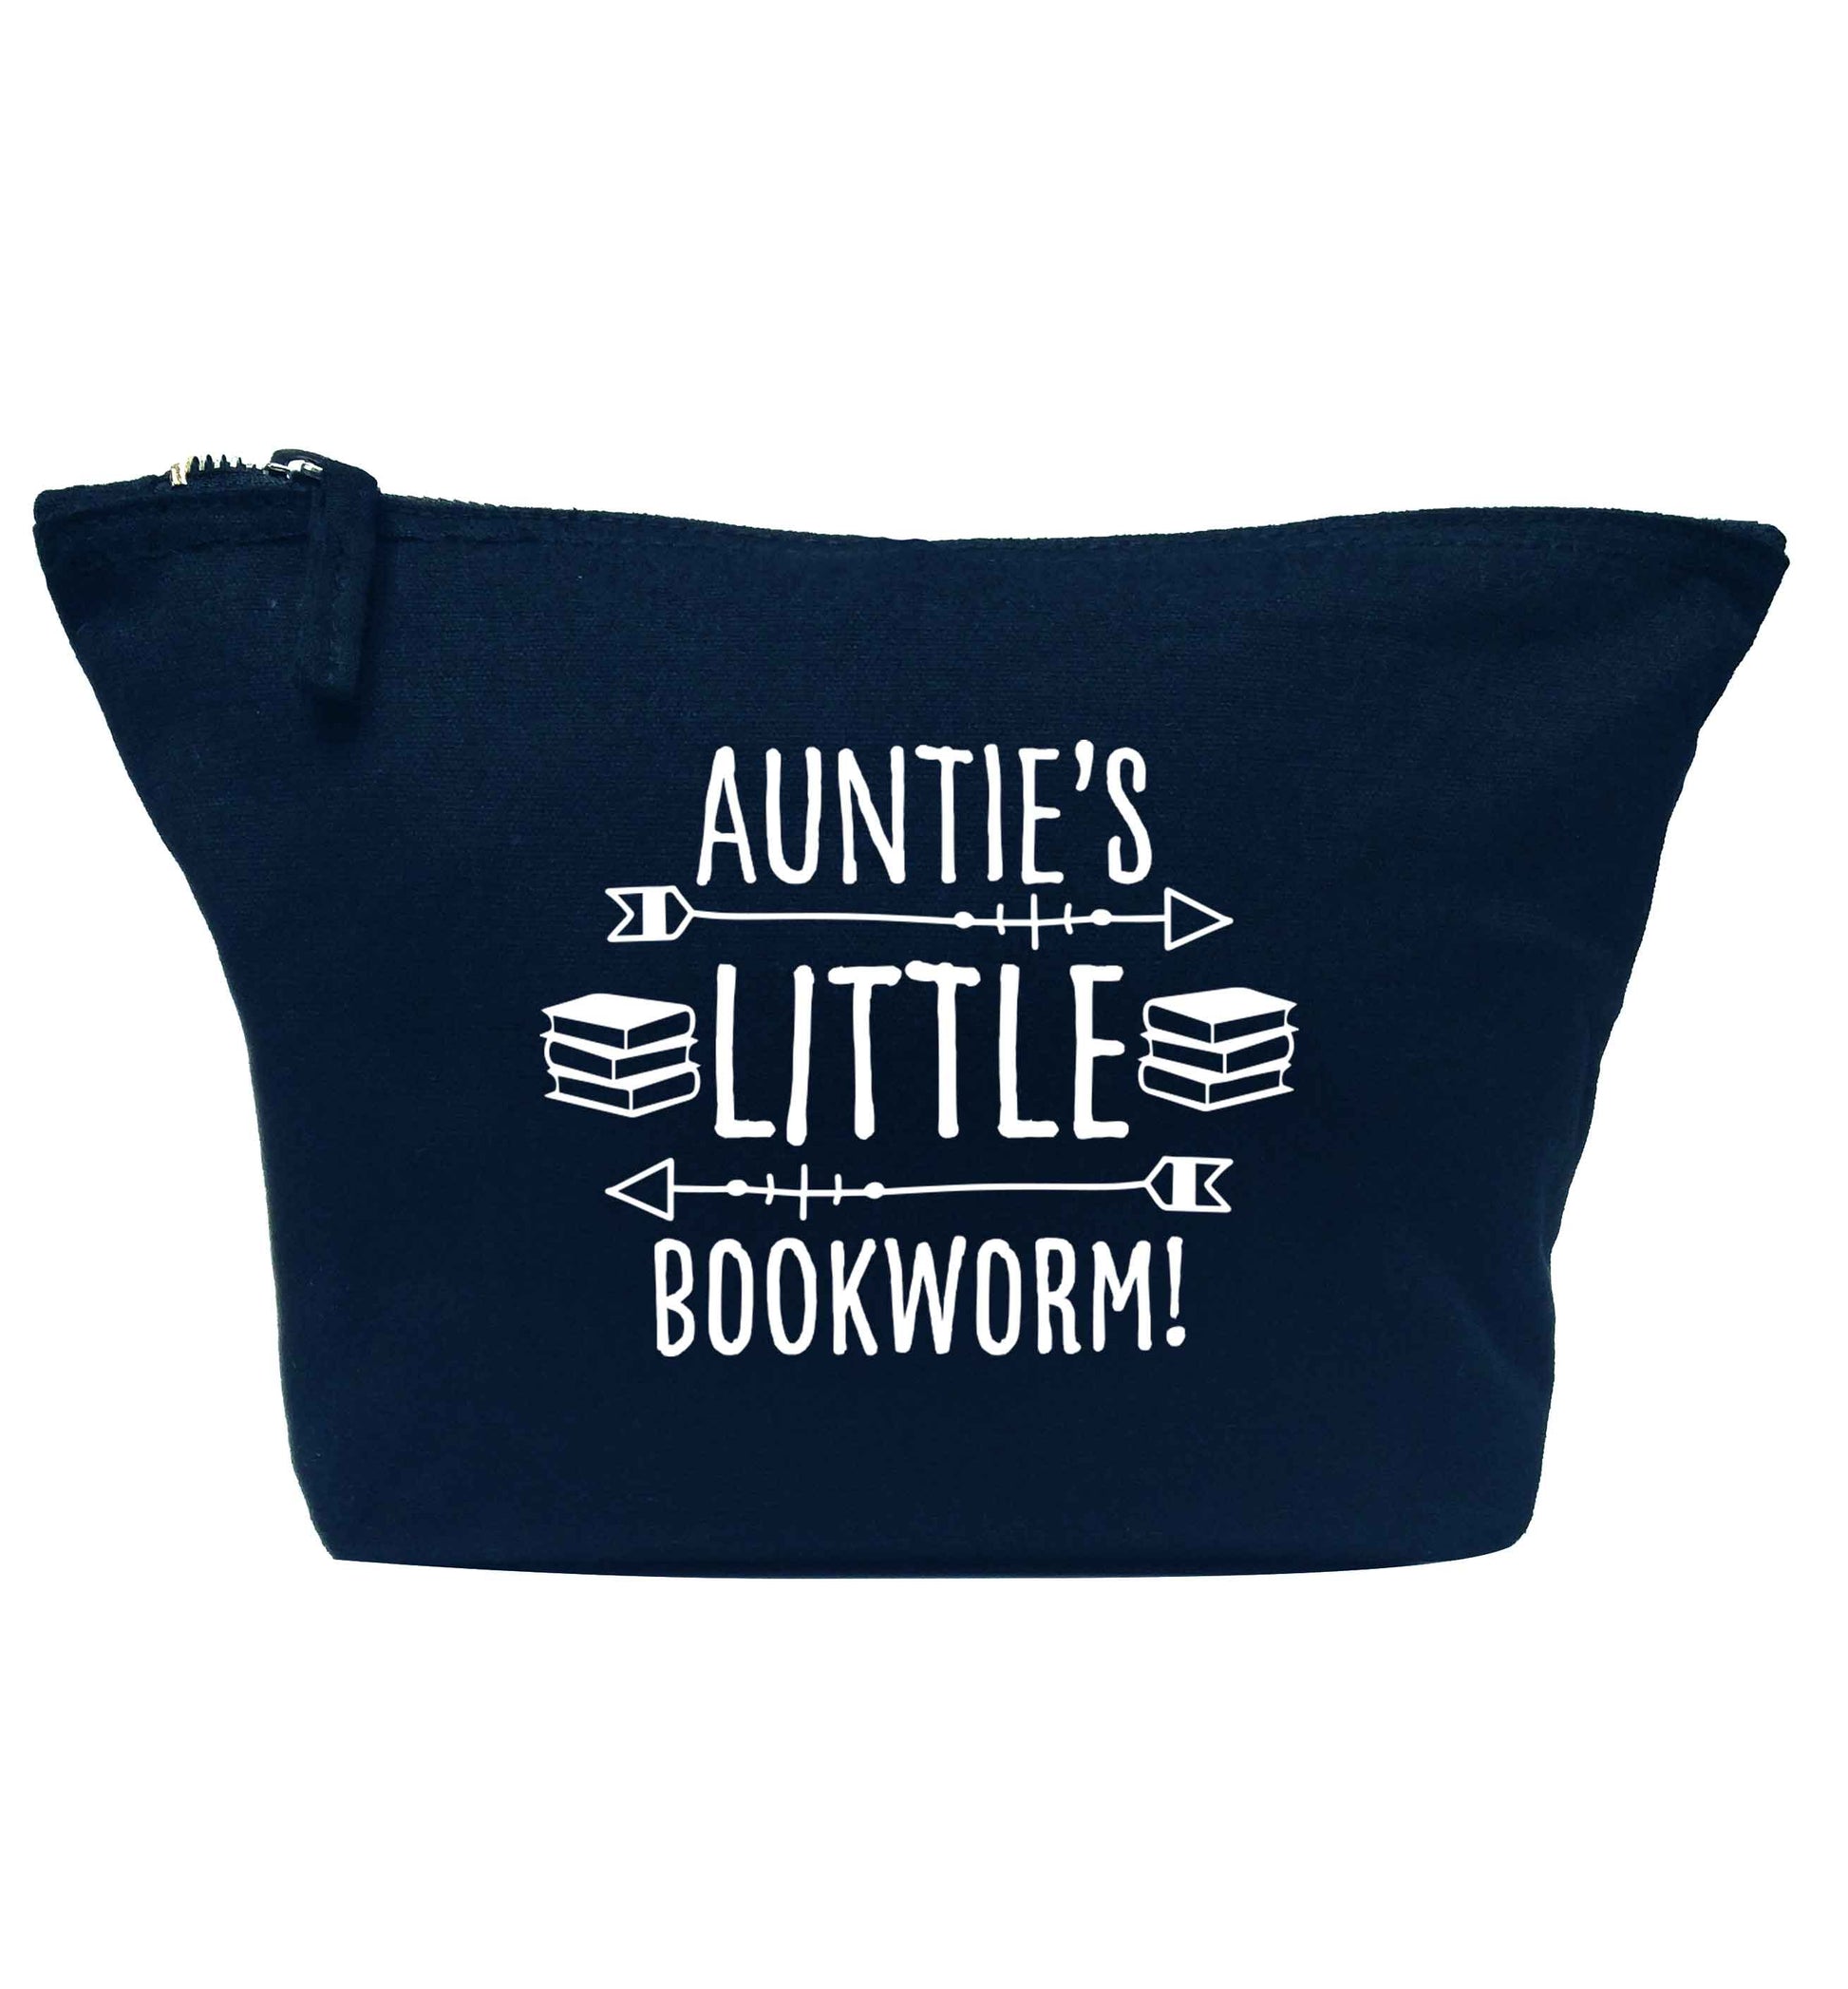 Auntie's little bookworm navy makeup bag